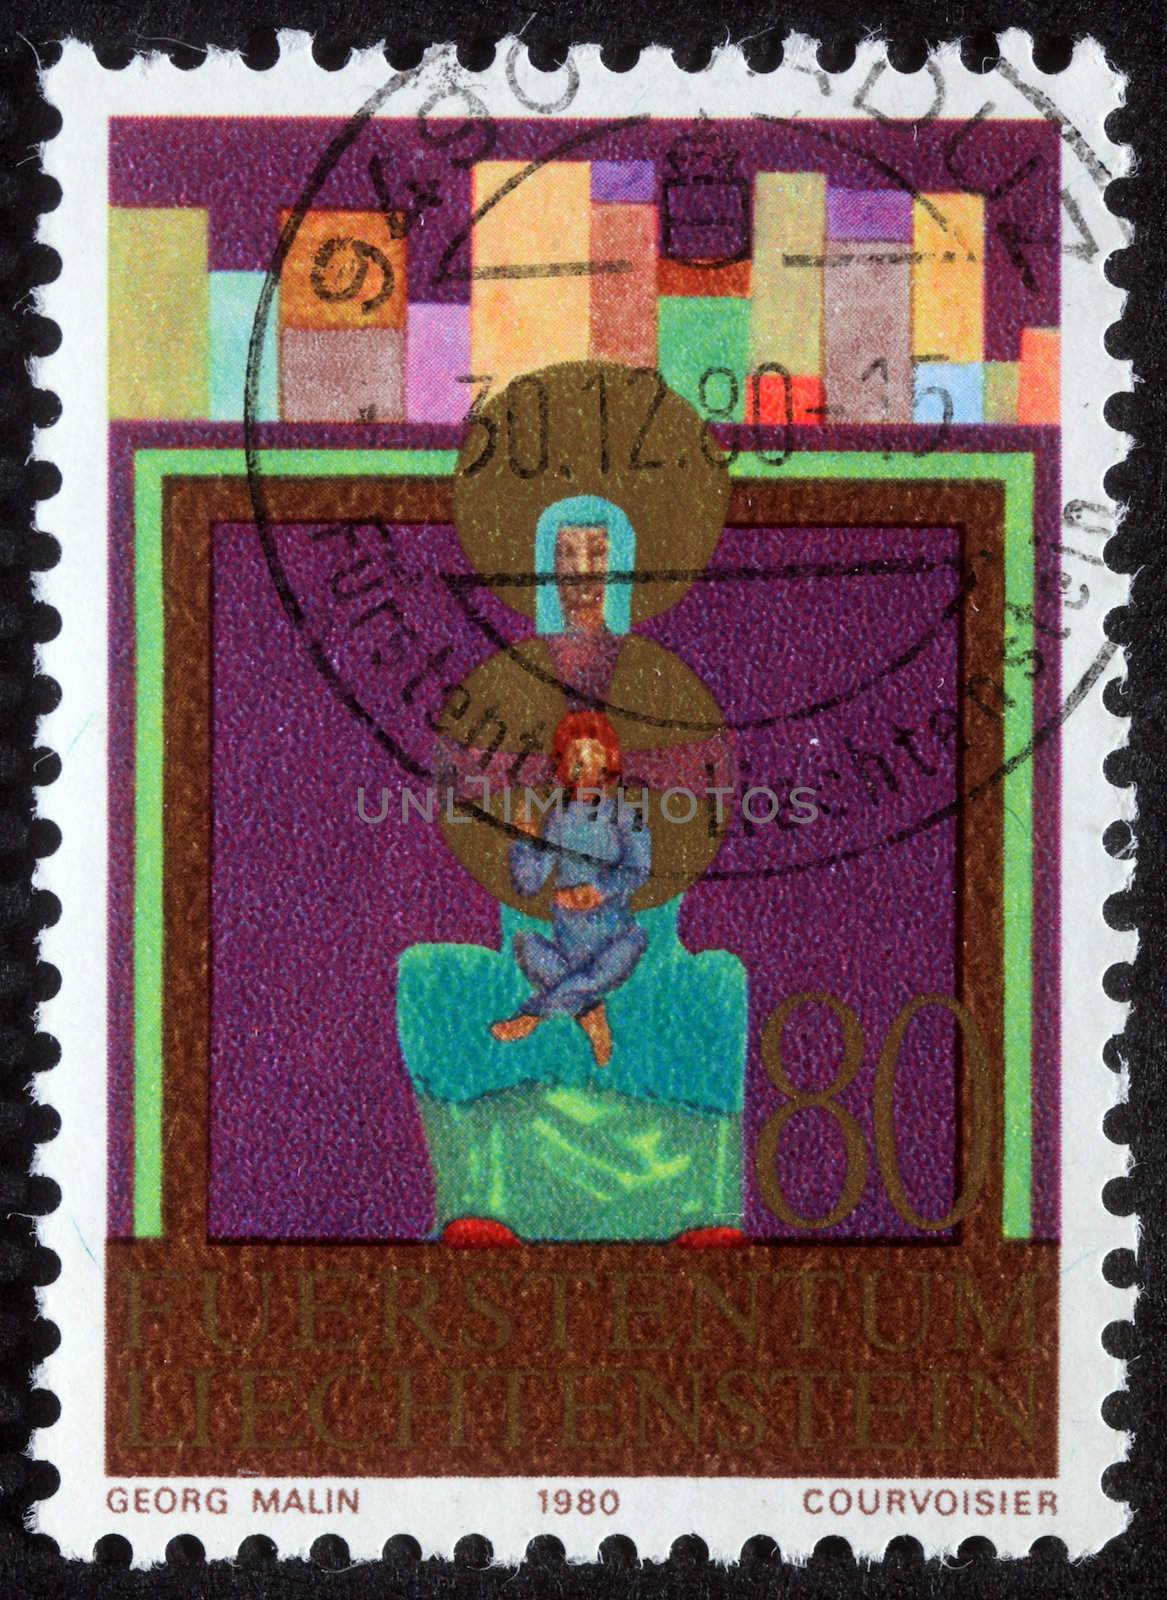 LIECHTENSTEIN - CIRCA 1980: A greeting Christmas stamp printed in Liechtenstein shows Madonna and Child